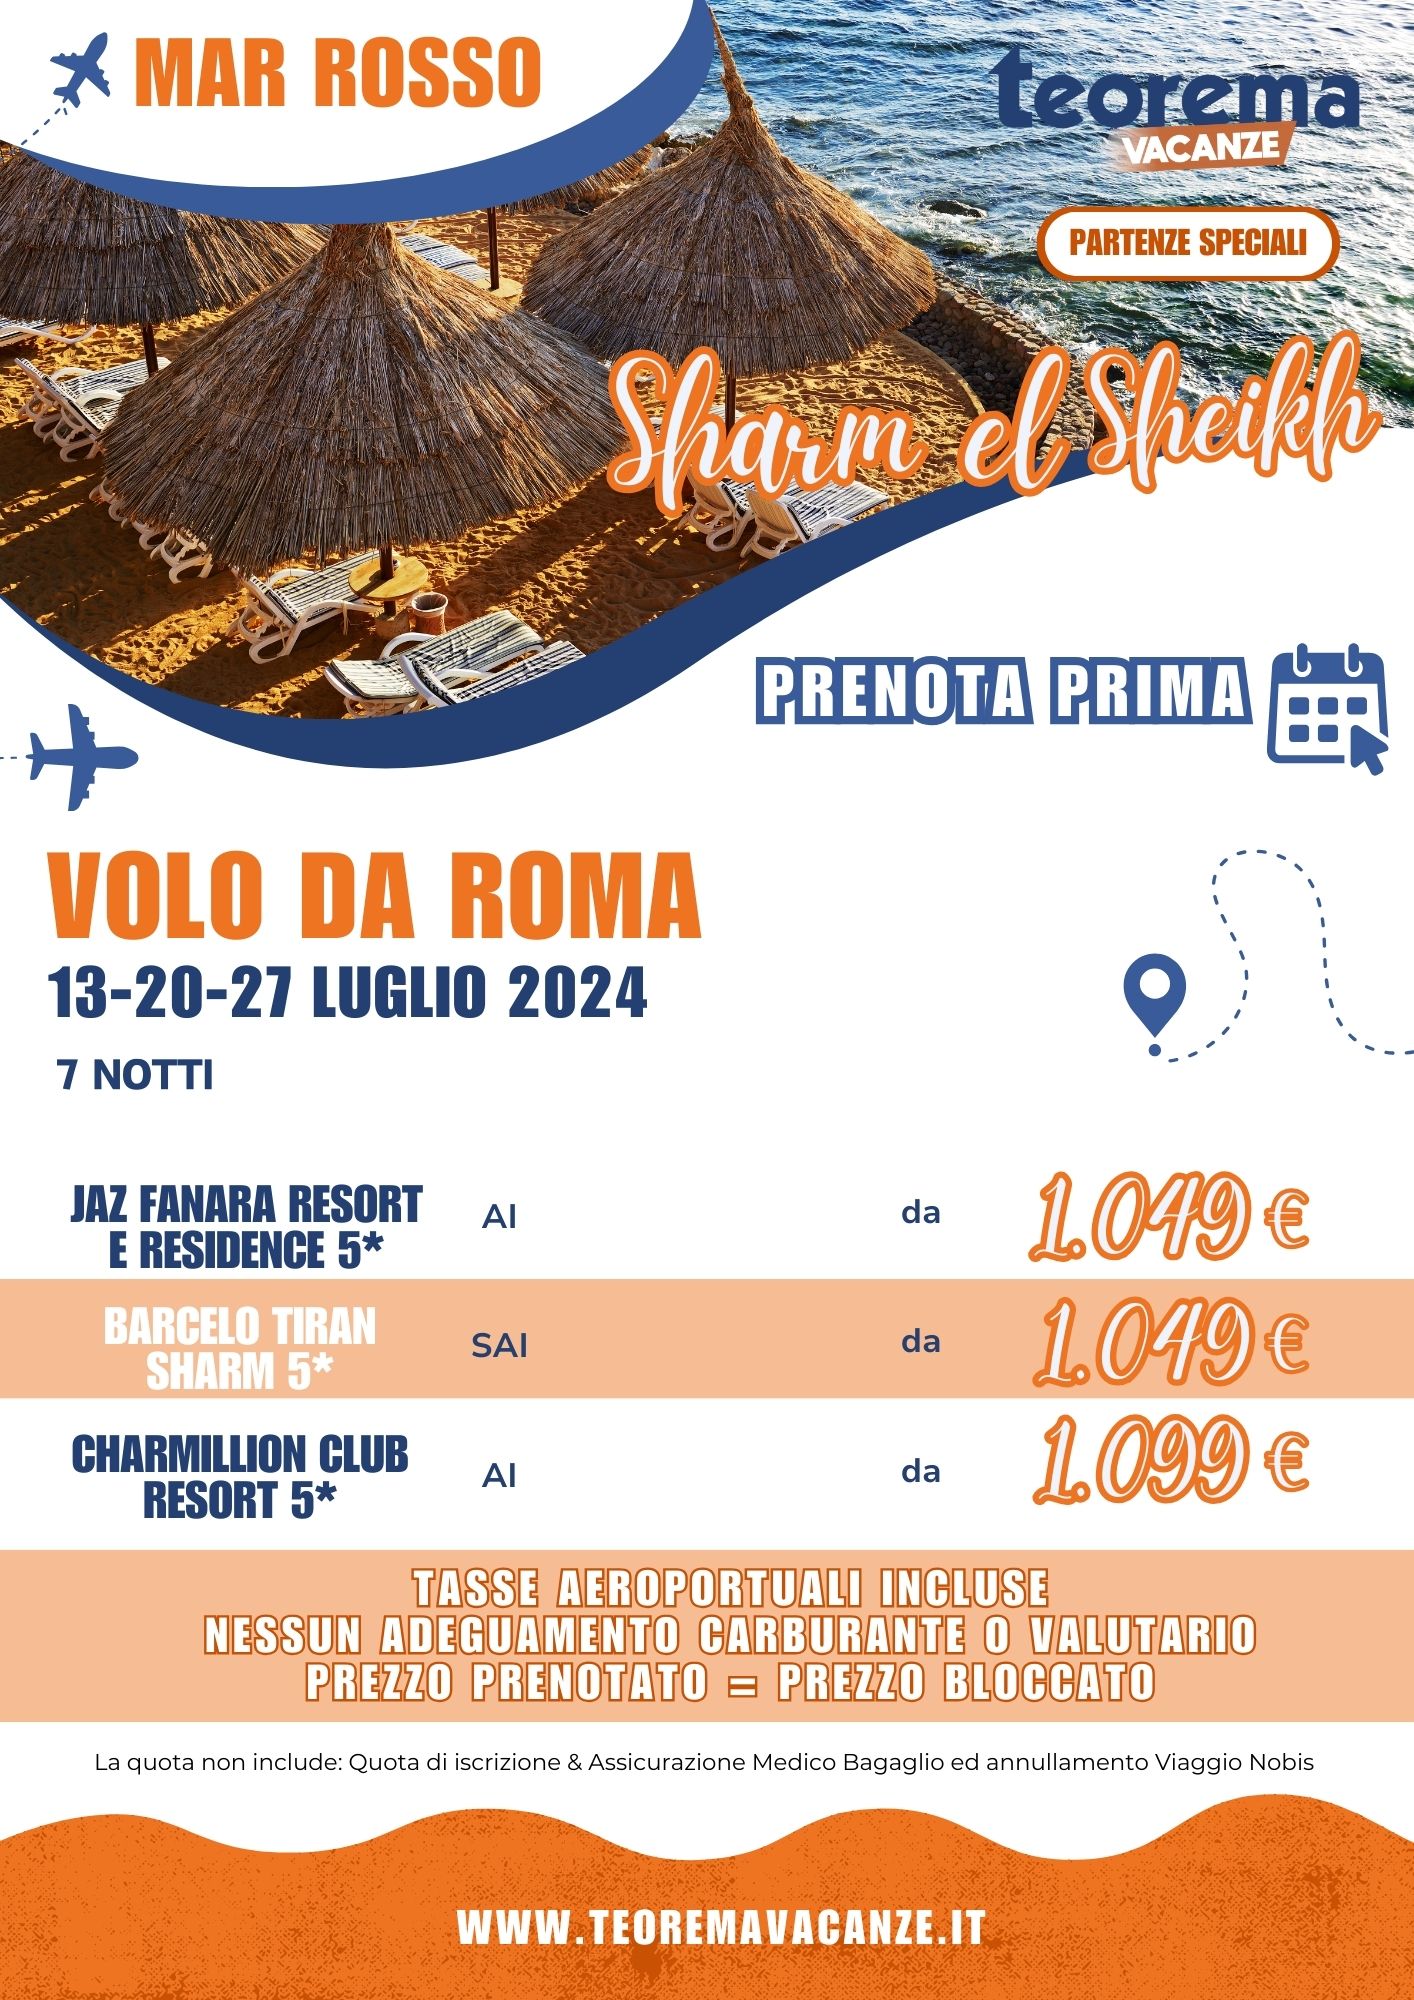 TEOREMA SUMMER 2024 - Sharm el sheikh DA ROMA Luglio